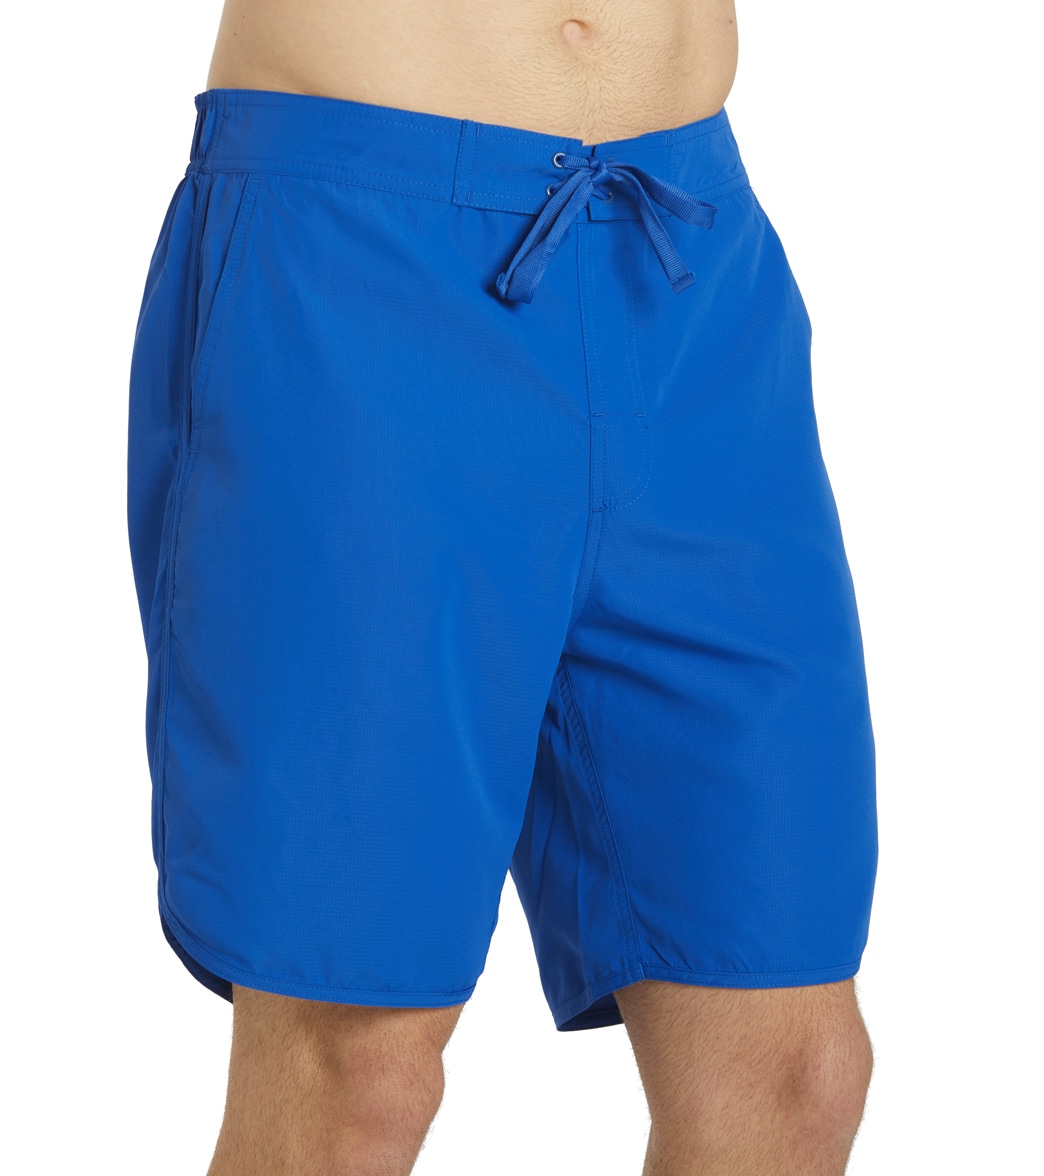 Sporti Men's Hybrid Board Short - Mariner Blue Medium Polyester - Swimoutlet.com